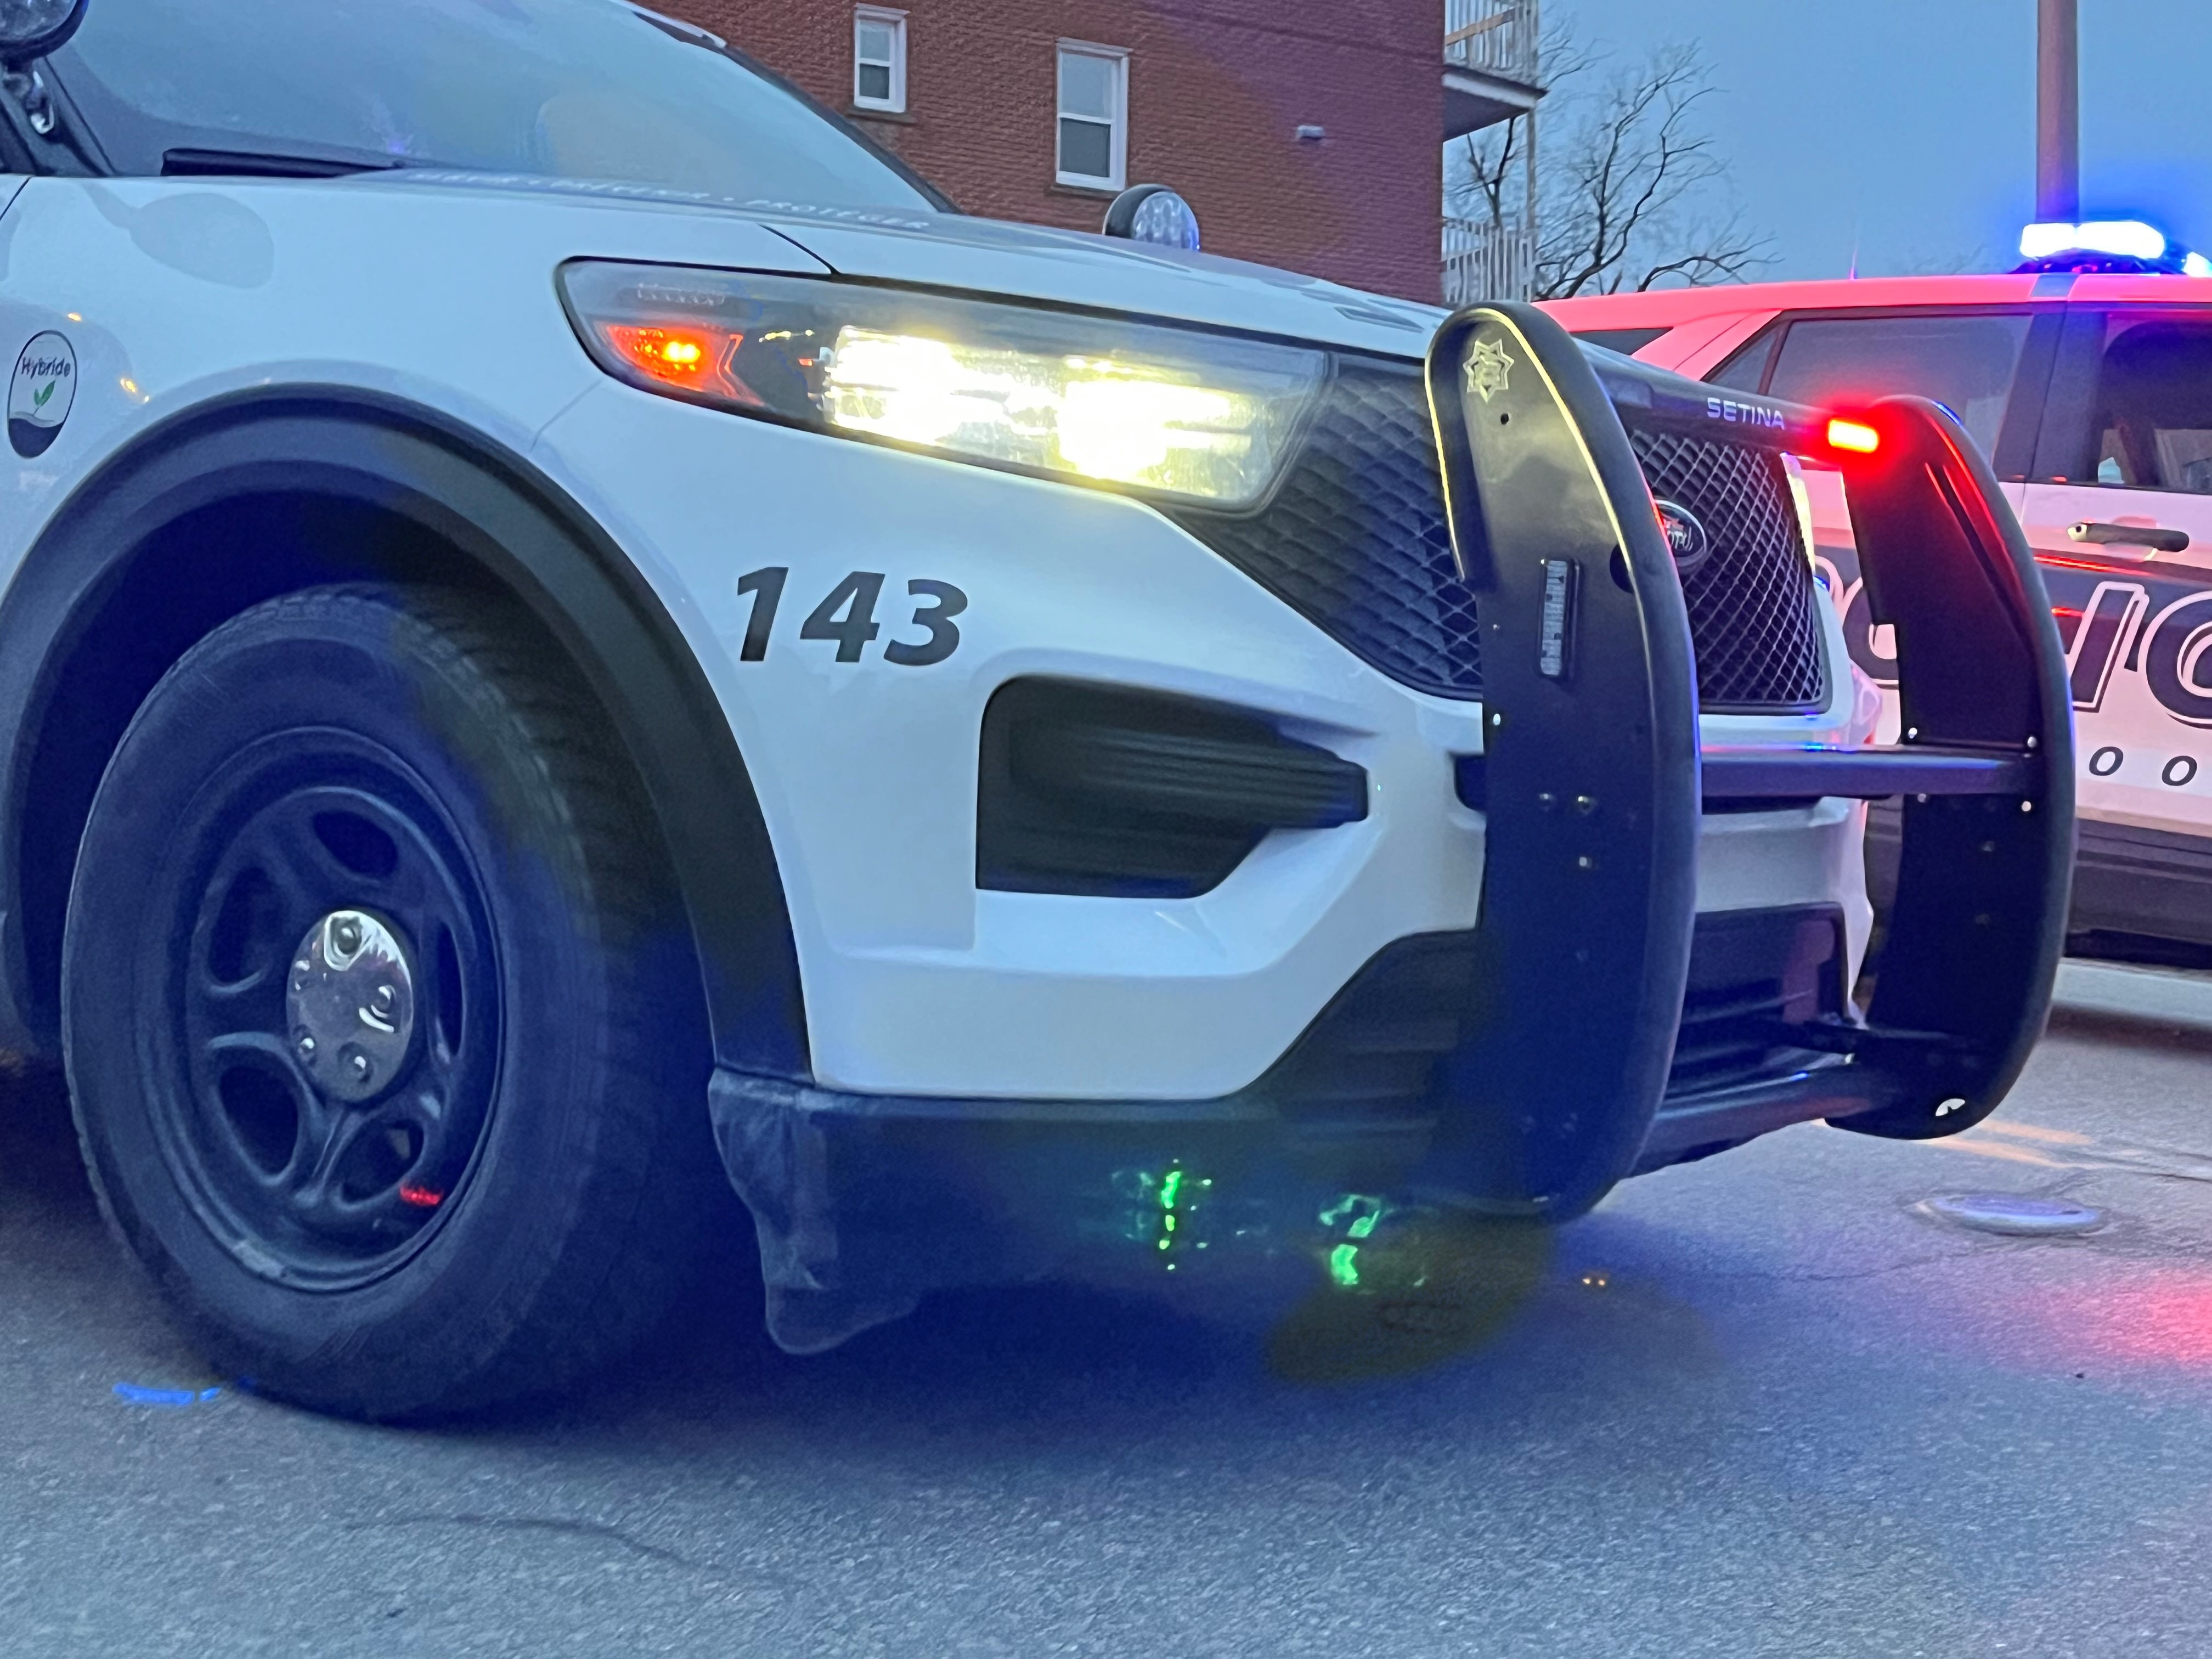 Le Service de police de Sherbrooke est à la recherche de témoins dans le but de retrouver les occupants d'un véhicule qui a été abandonné dans la nuit de jeudi à vendredi à Sherbrooke.